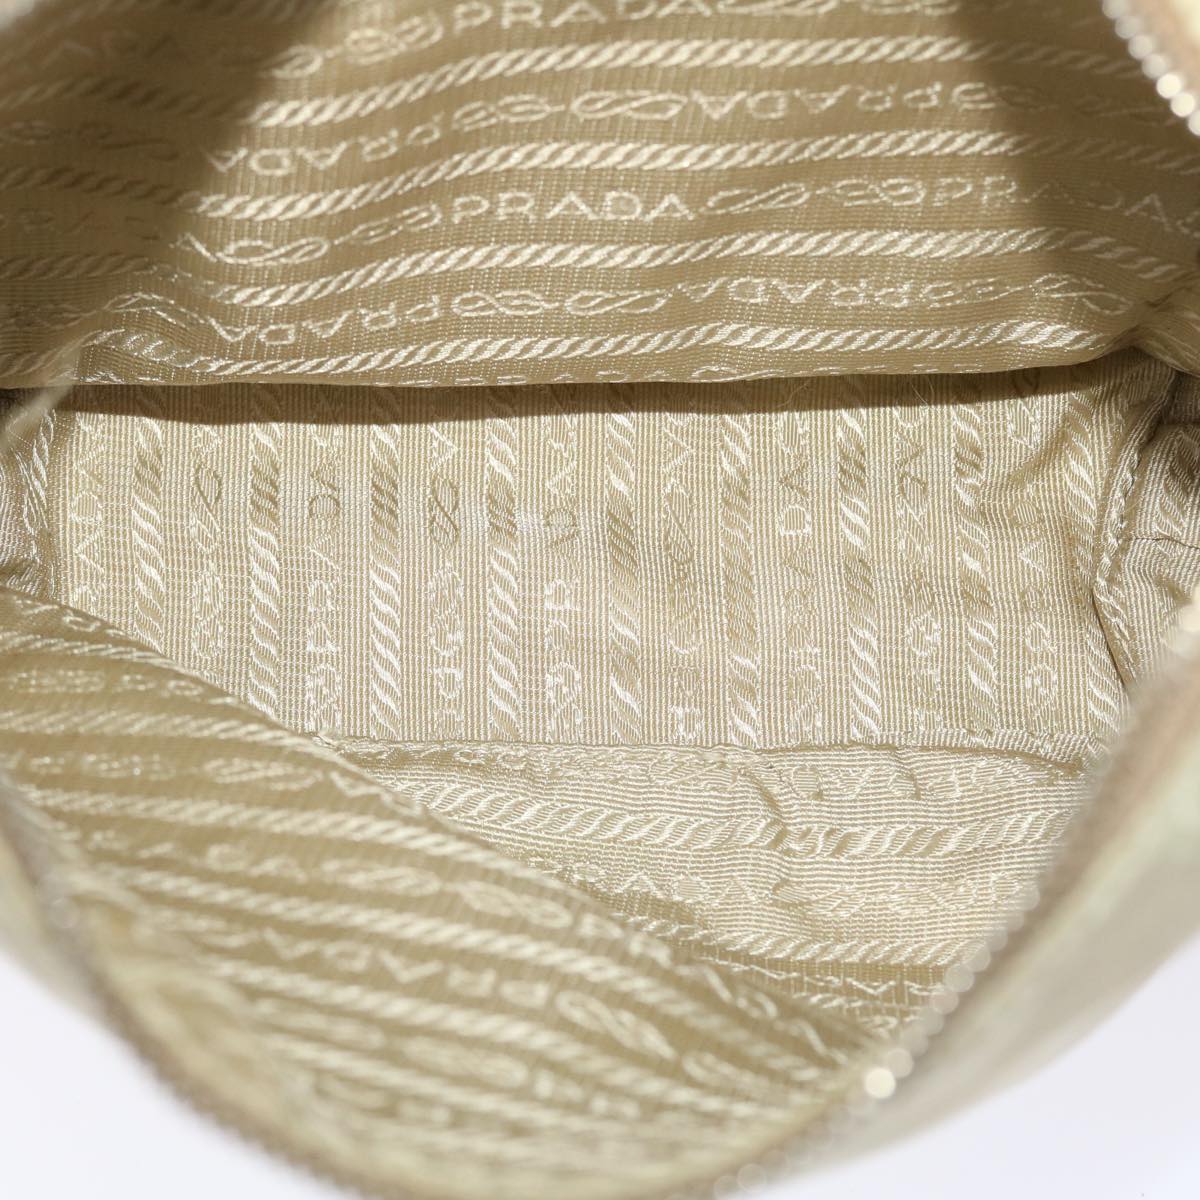 PRADA Shoulder Bag Nylon Leather Cream Auth 50154